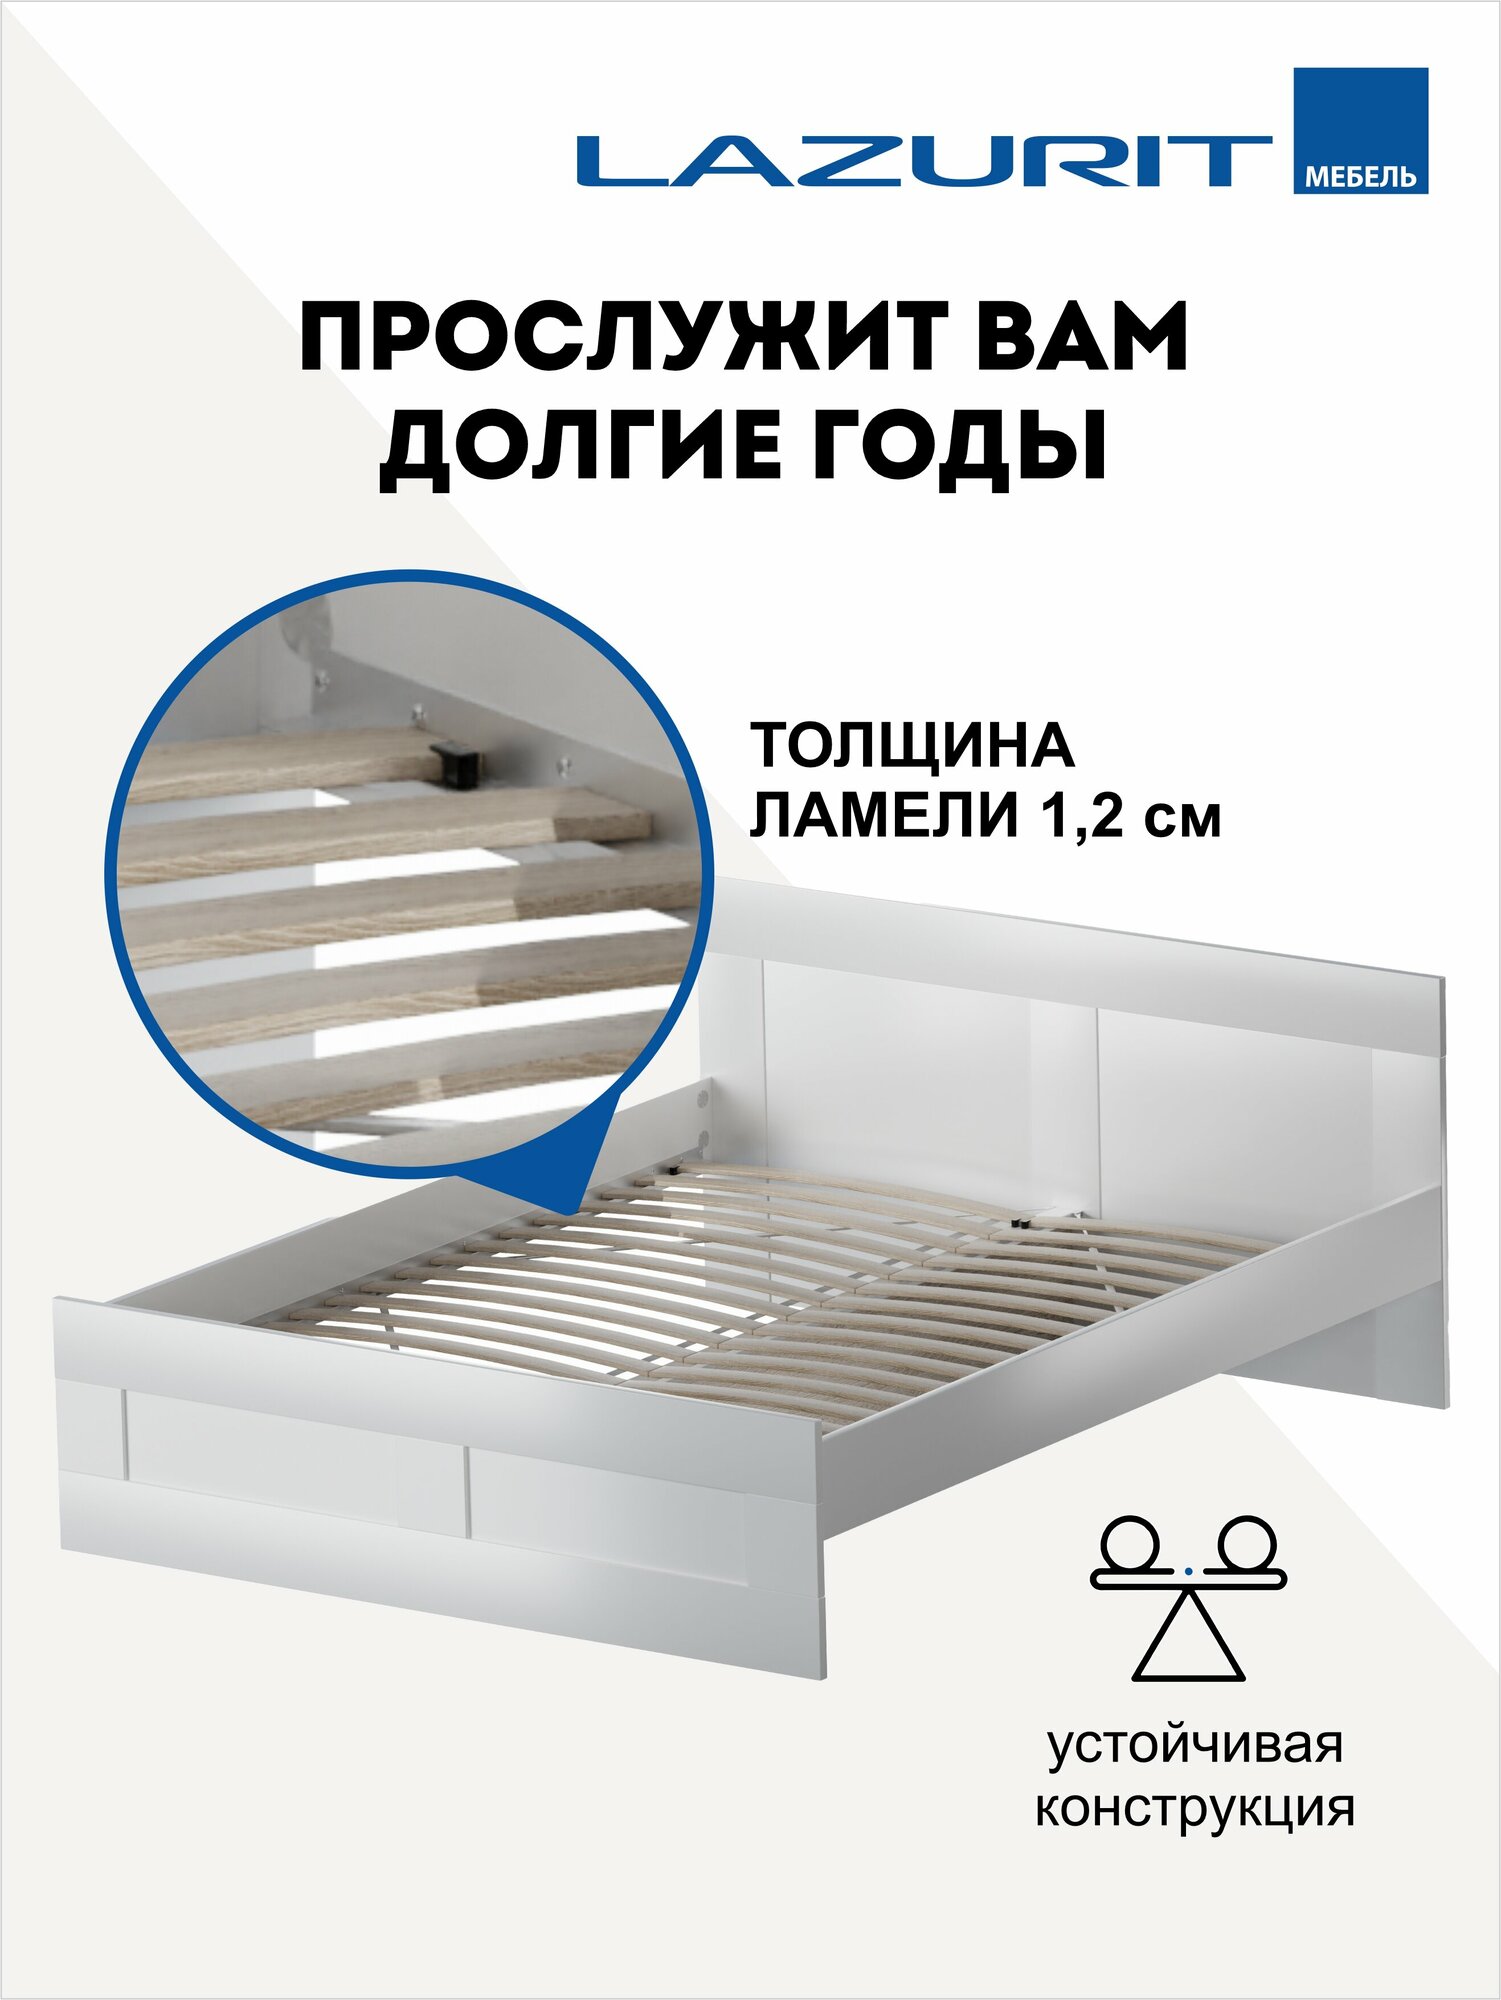 Кровать двуспальная белая Lazurit Classica деревянная 160х200